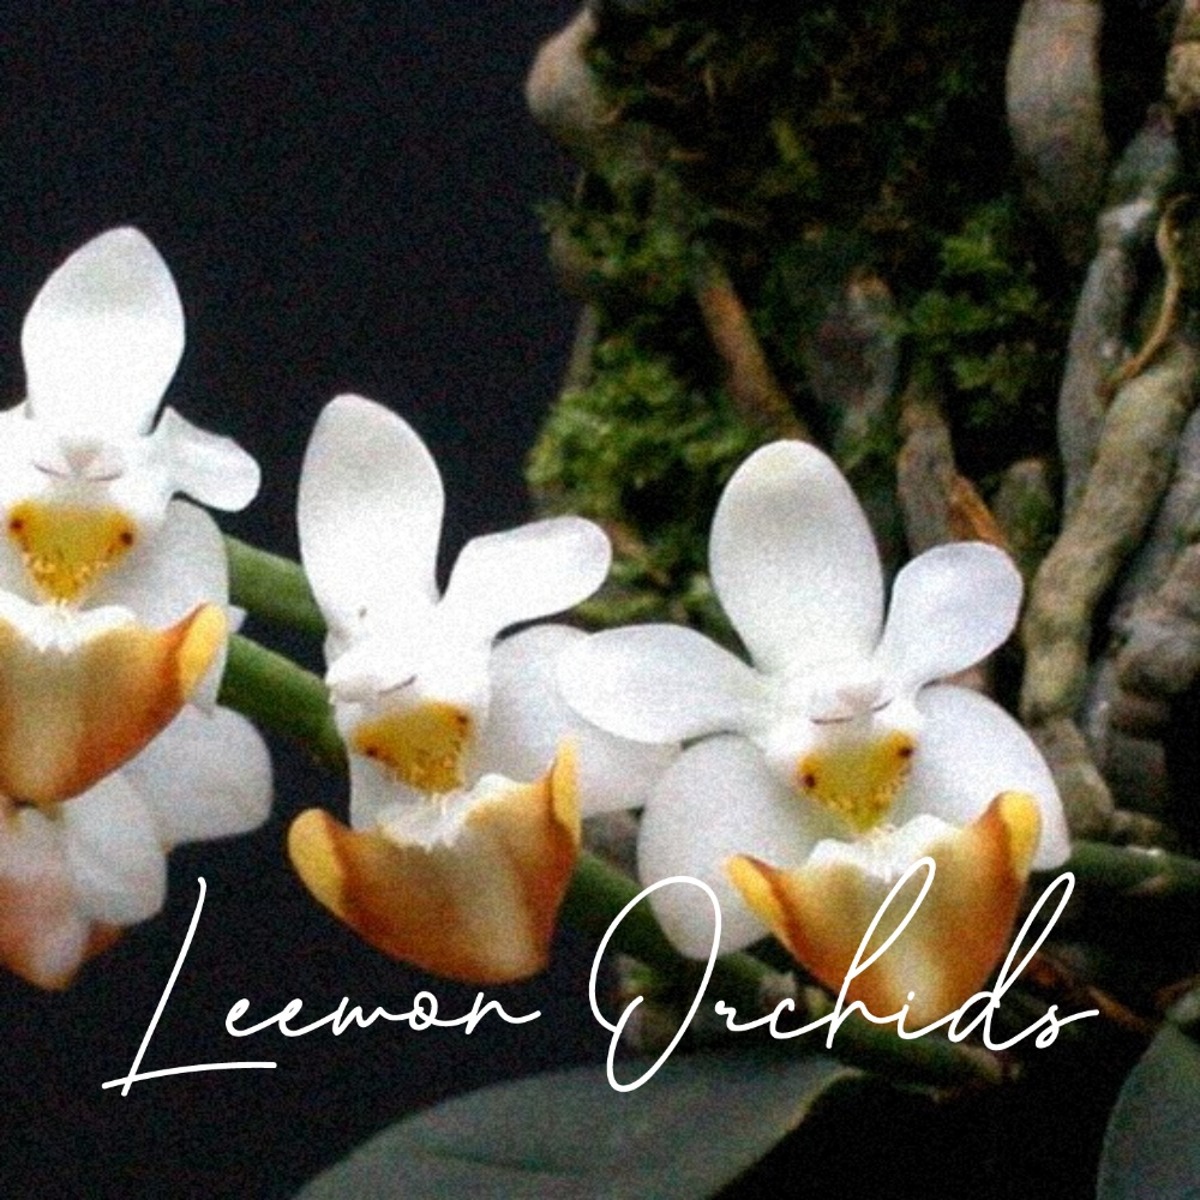 페일레놉시스 로비아이 Phalaenopsis lobbii (온라인 한정재고: 1)